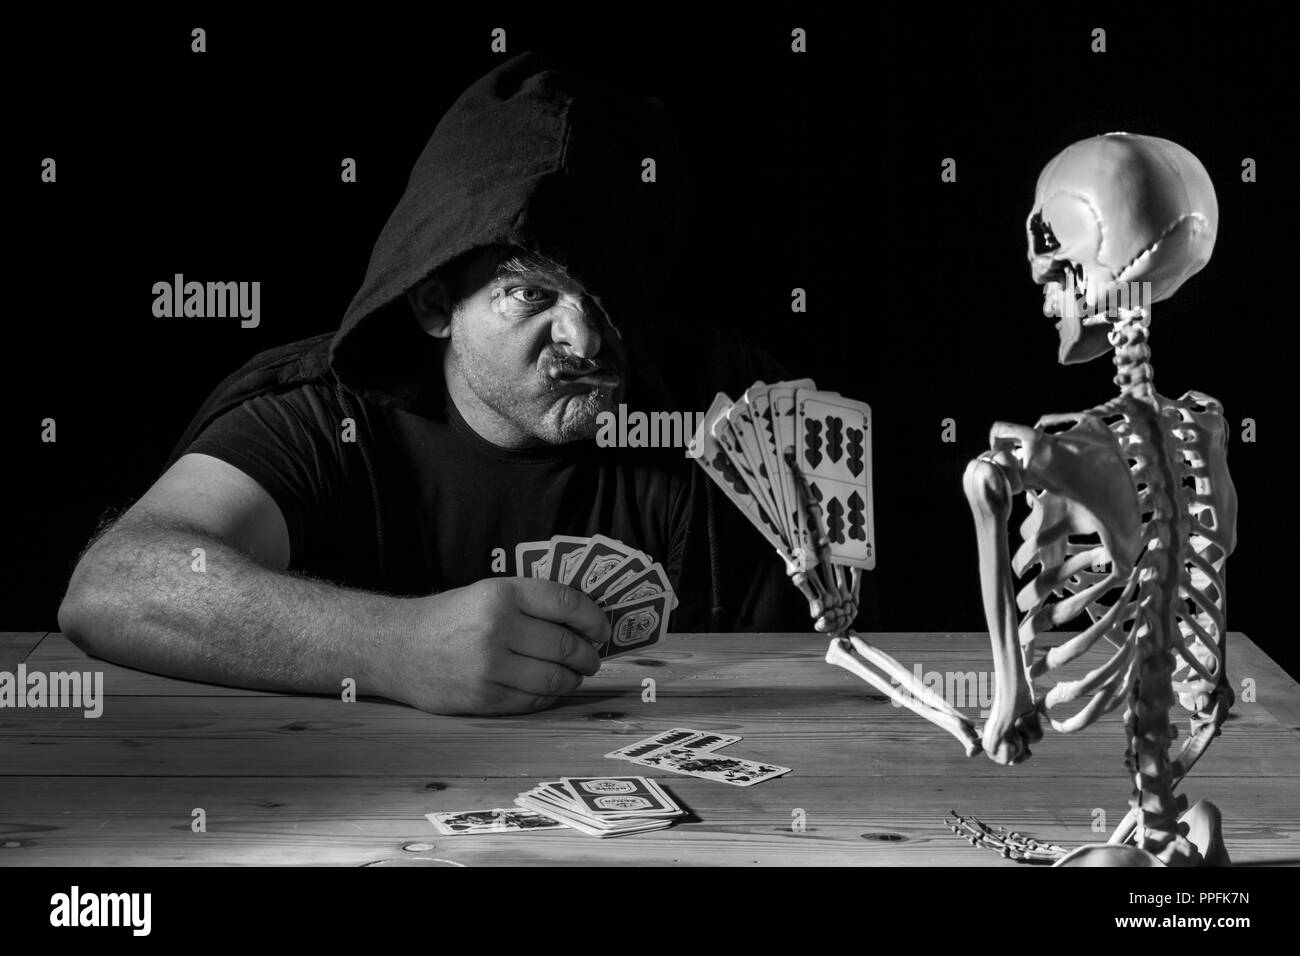 El hombre juega a las cartas con un esqueleto, su último juego, imagen de símbolo de la vida y de la muerte, Alemania Foto de stock